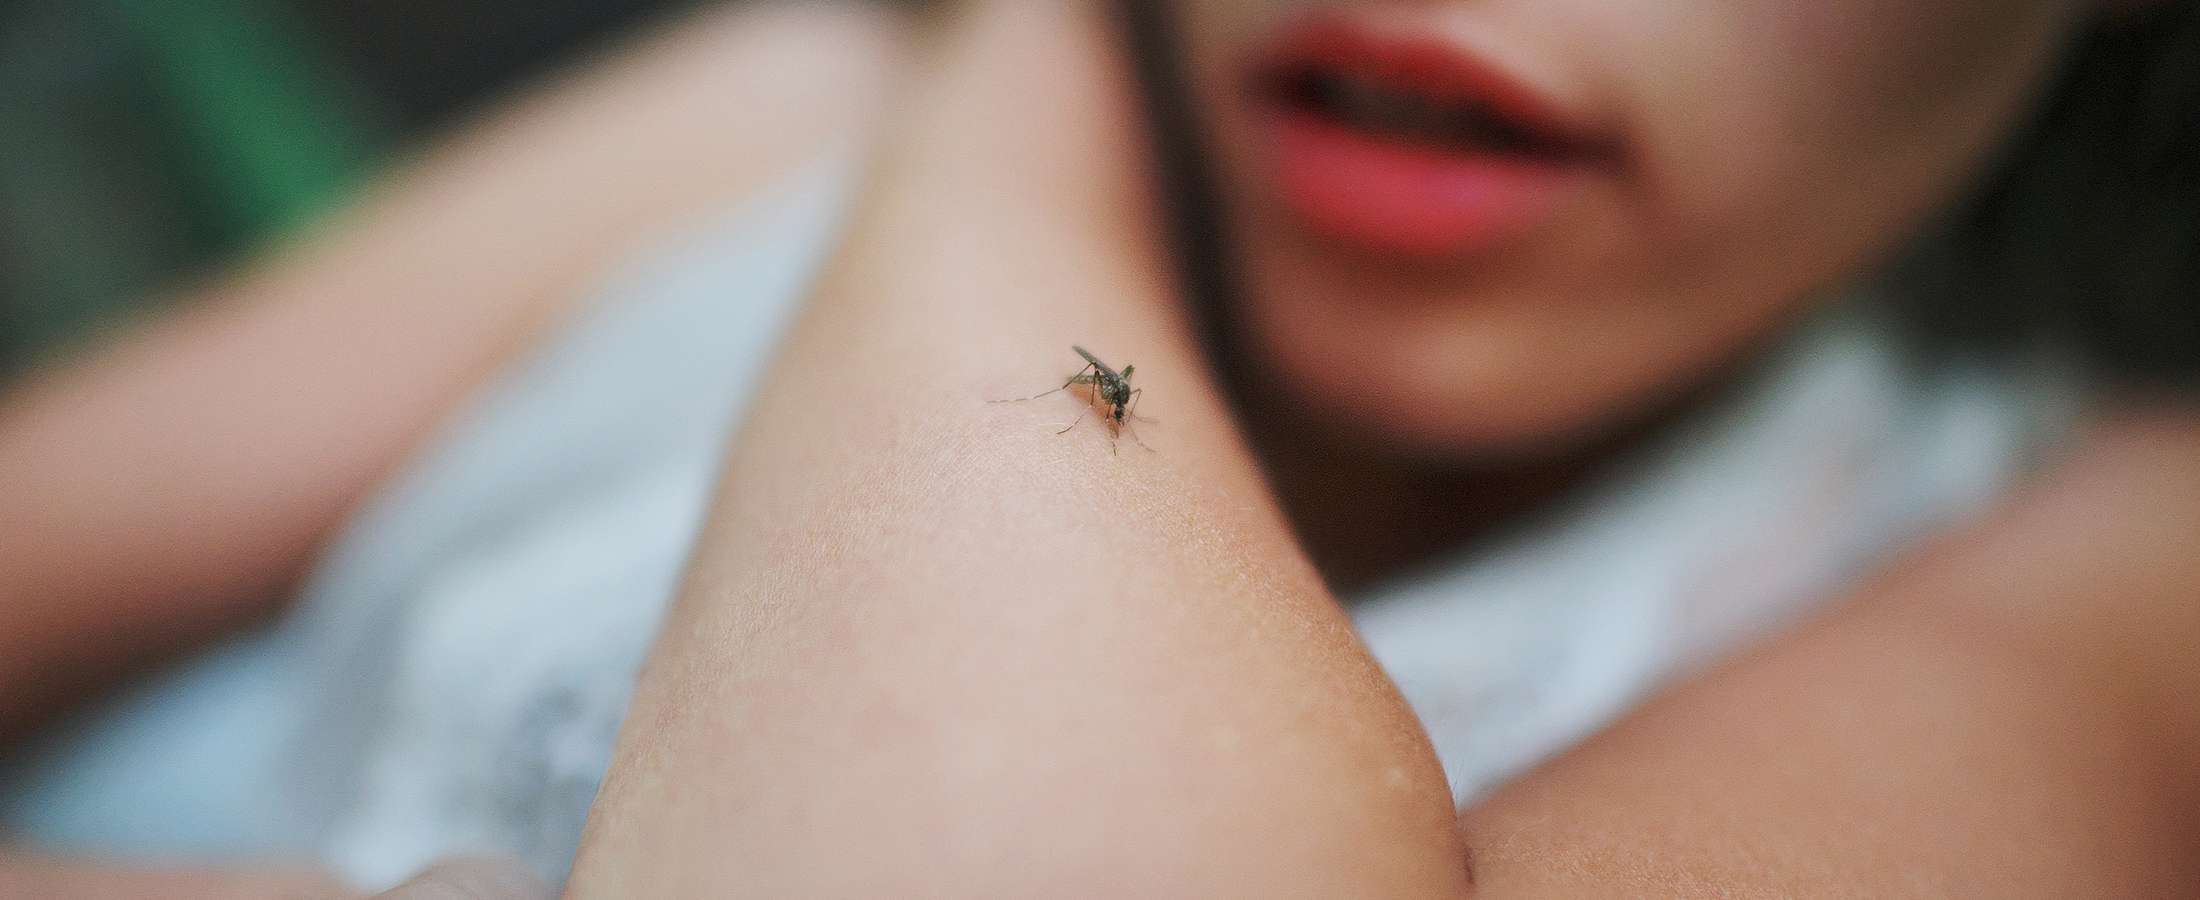 Bug Bites and Stings